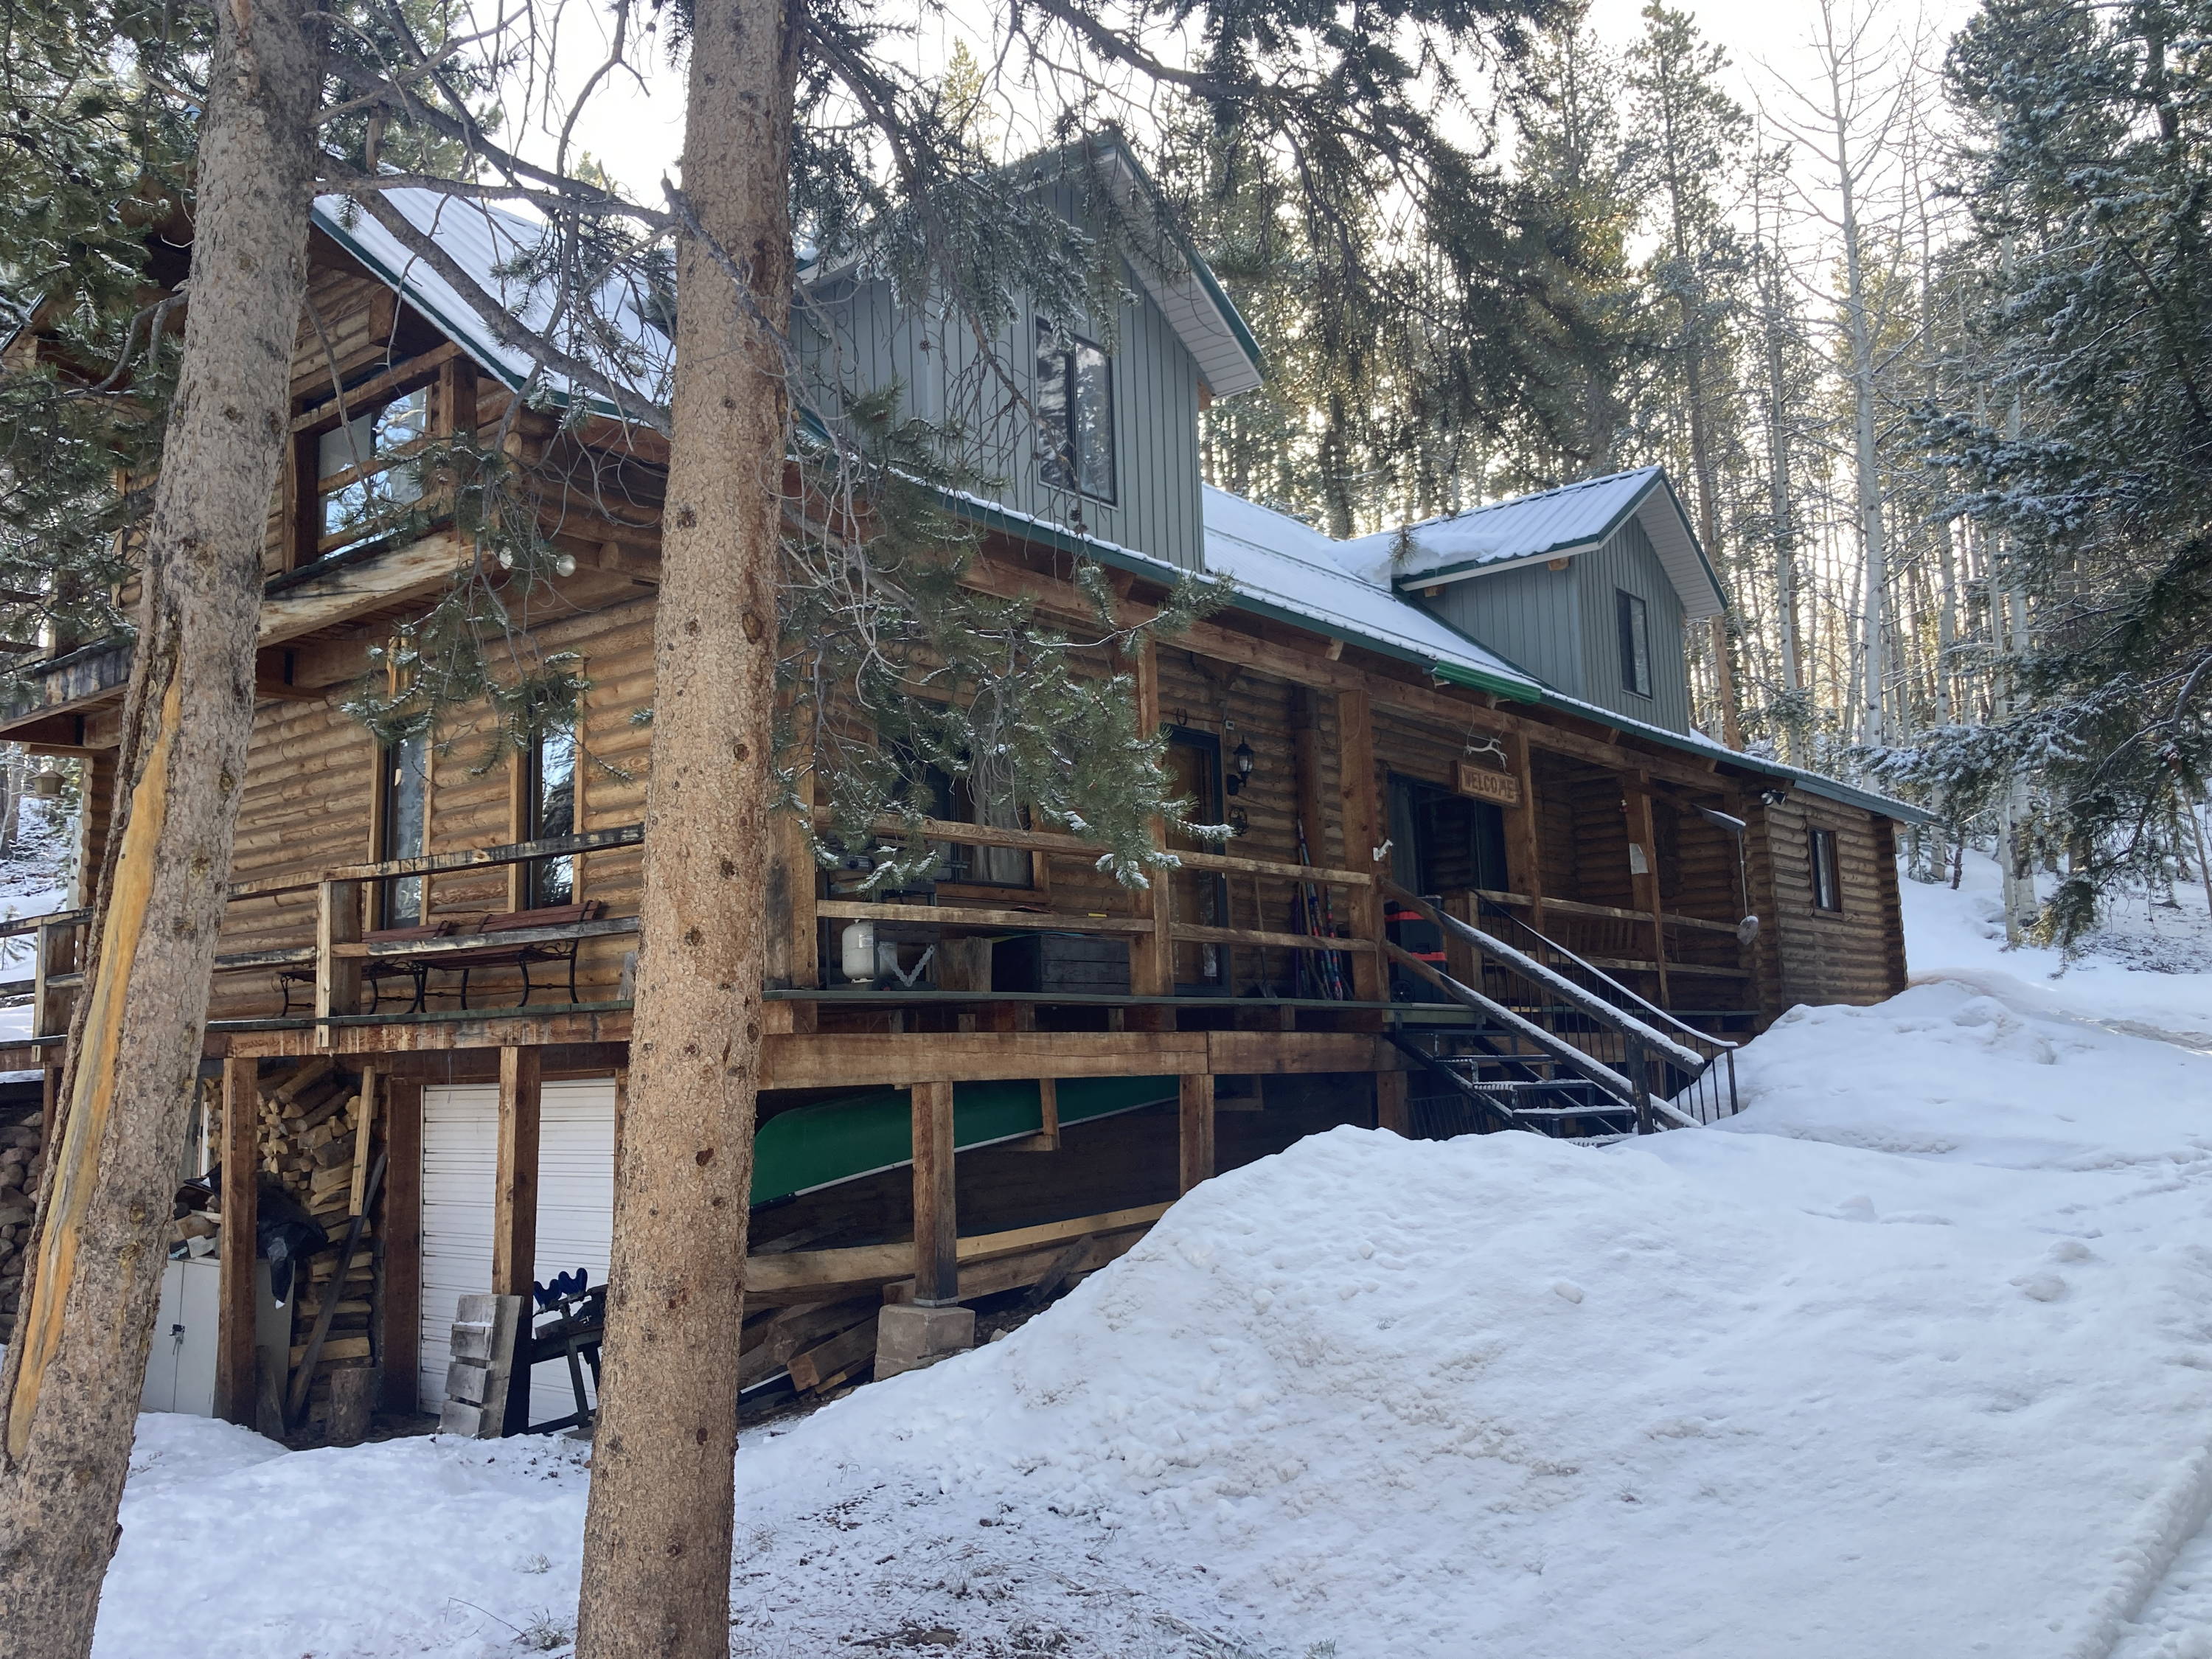 Mark's original cabin in the snow